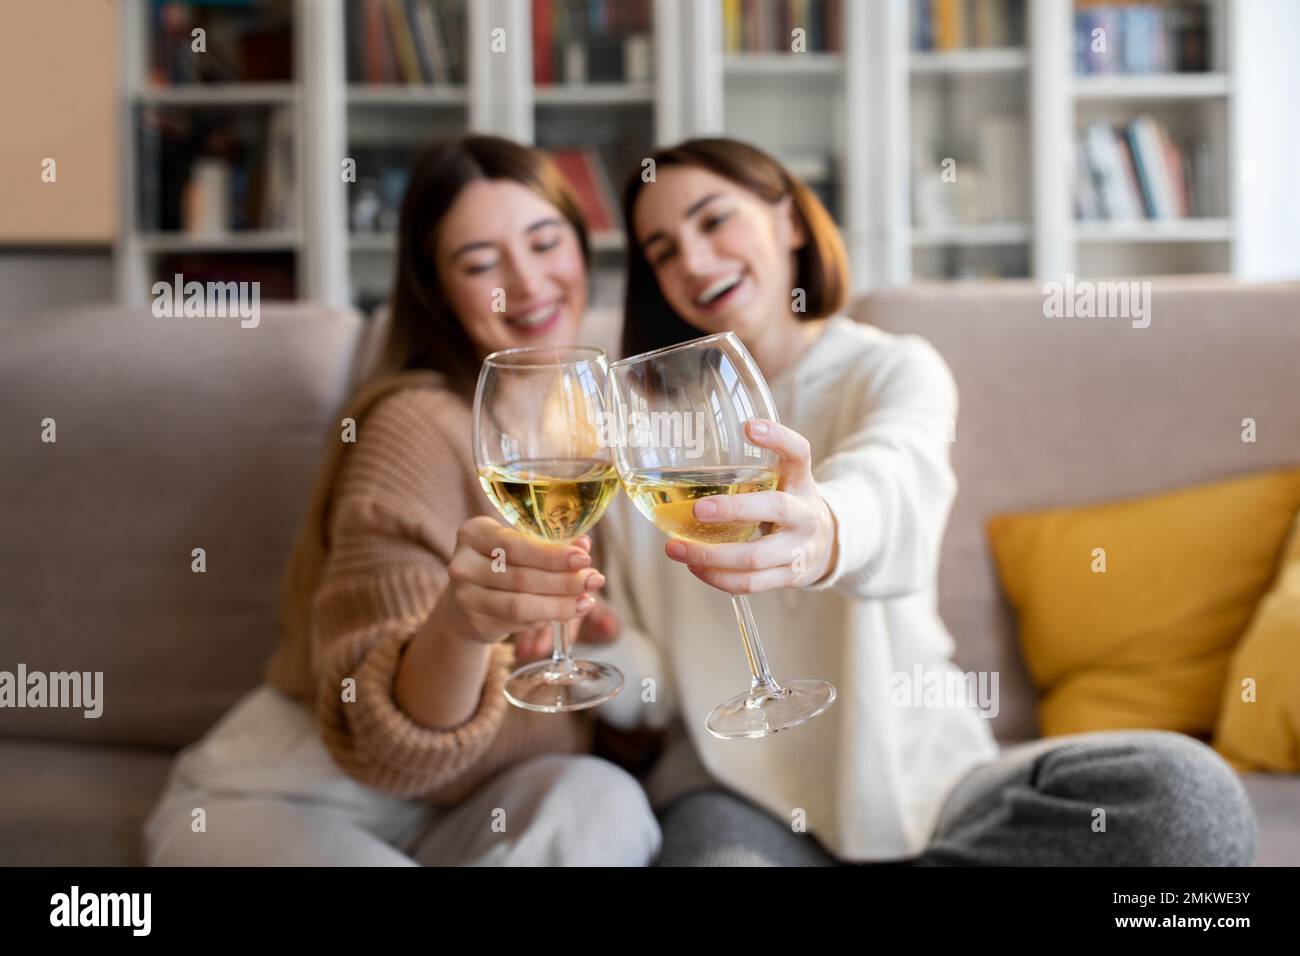 Fröhliche, hübsche europäische Millennials in Pullover jubeln Gläser Wein an, genießen Sie Entspannung und Freizeit Stockfoto